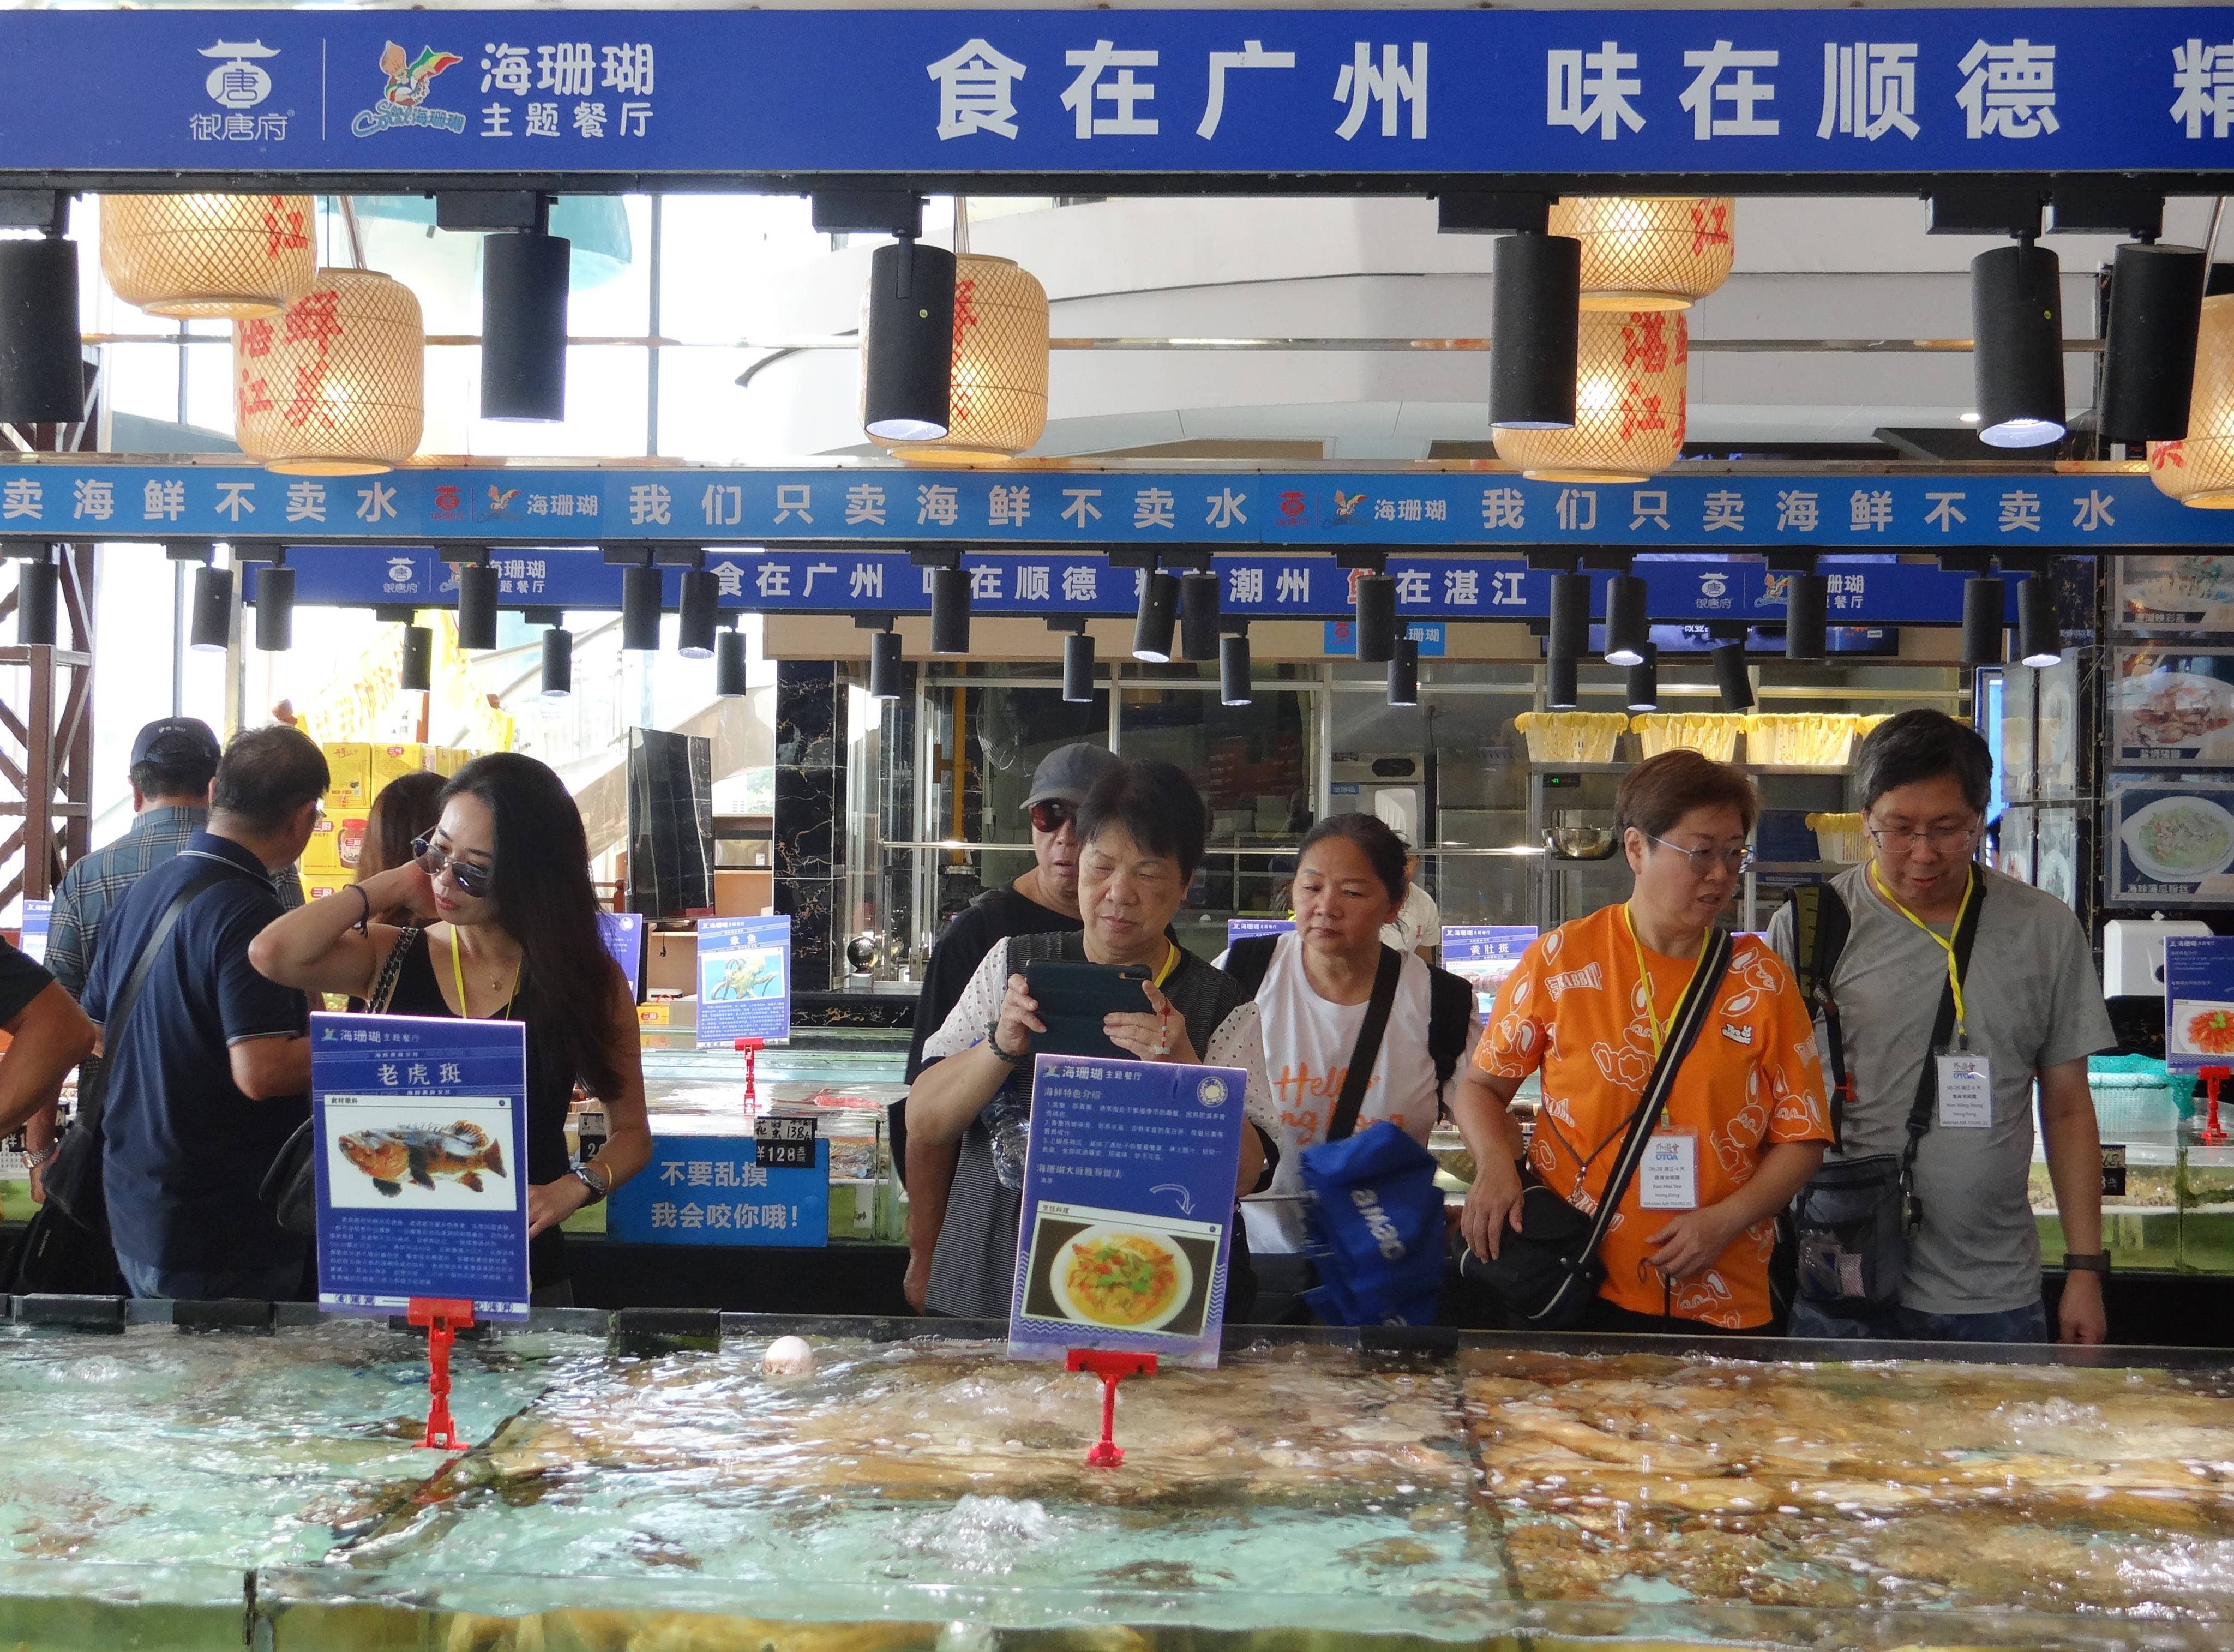 “吃海鮮，到湛江”系列活动之香港美食专列活动隆重举办